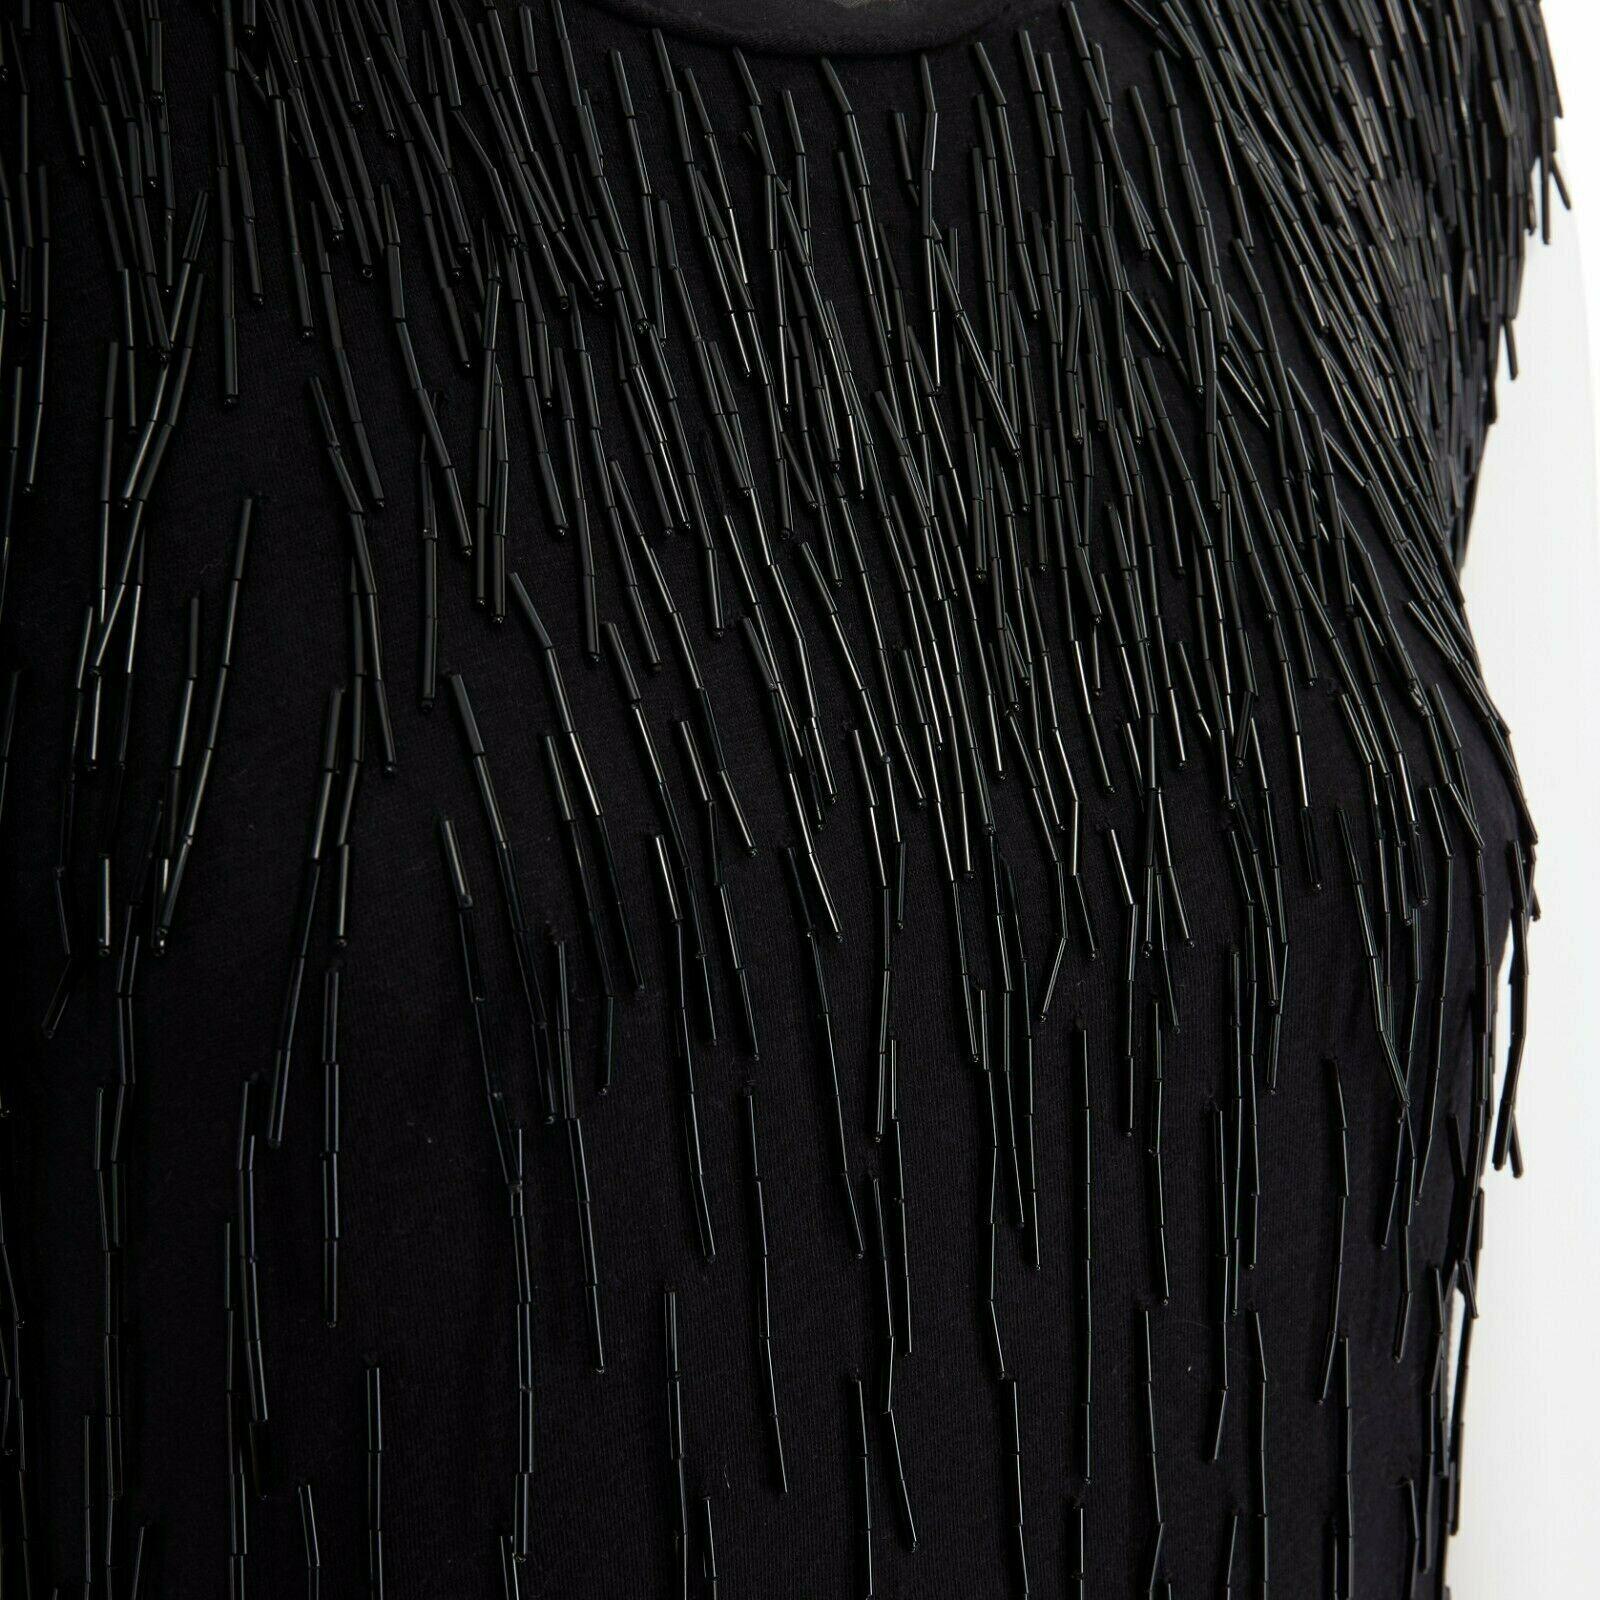 LANVIN ALBER ELBAZ black beaded fringe embellished flapper silk dress FR34 XS 3